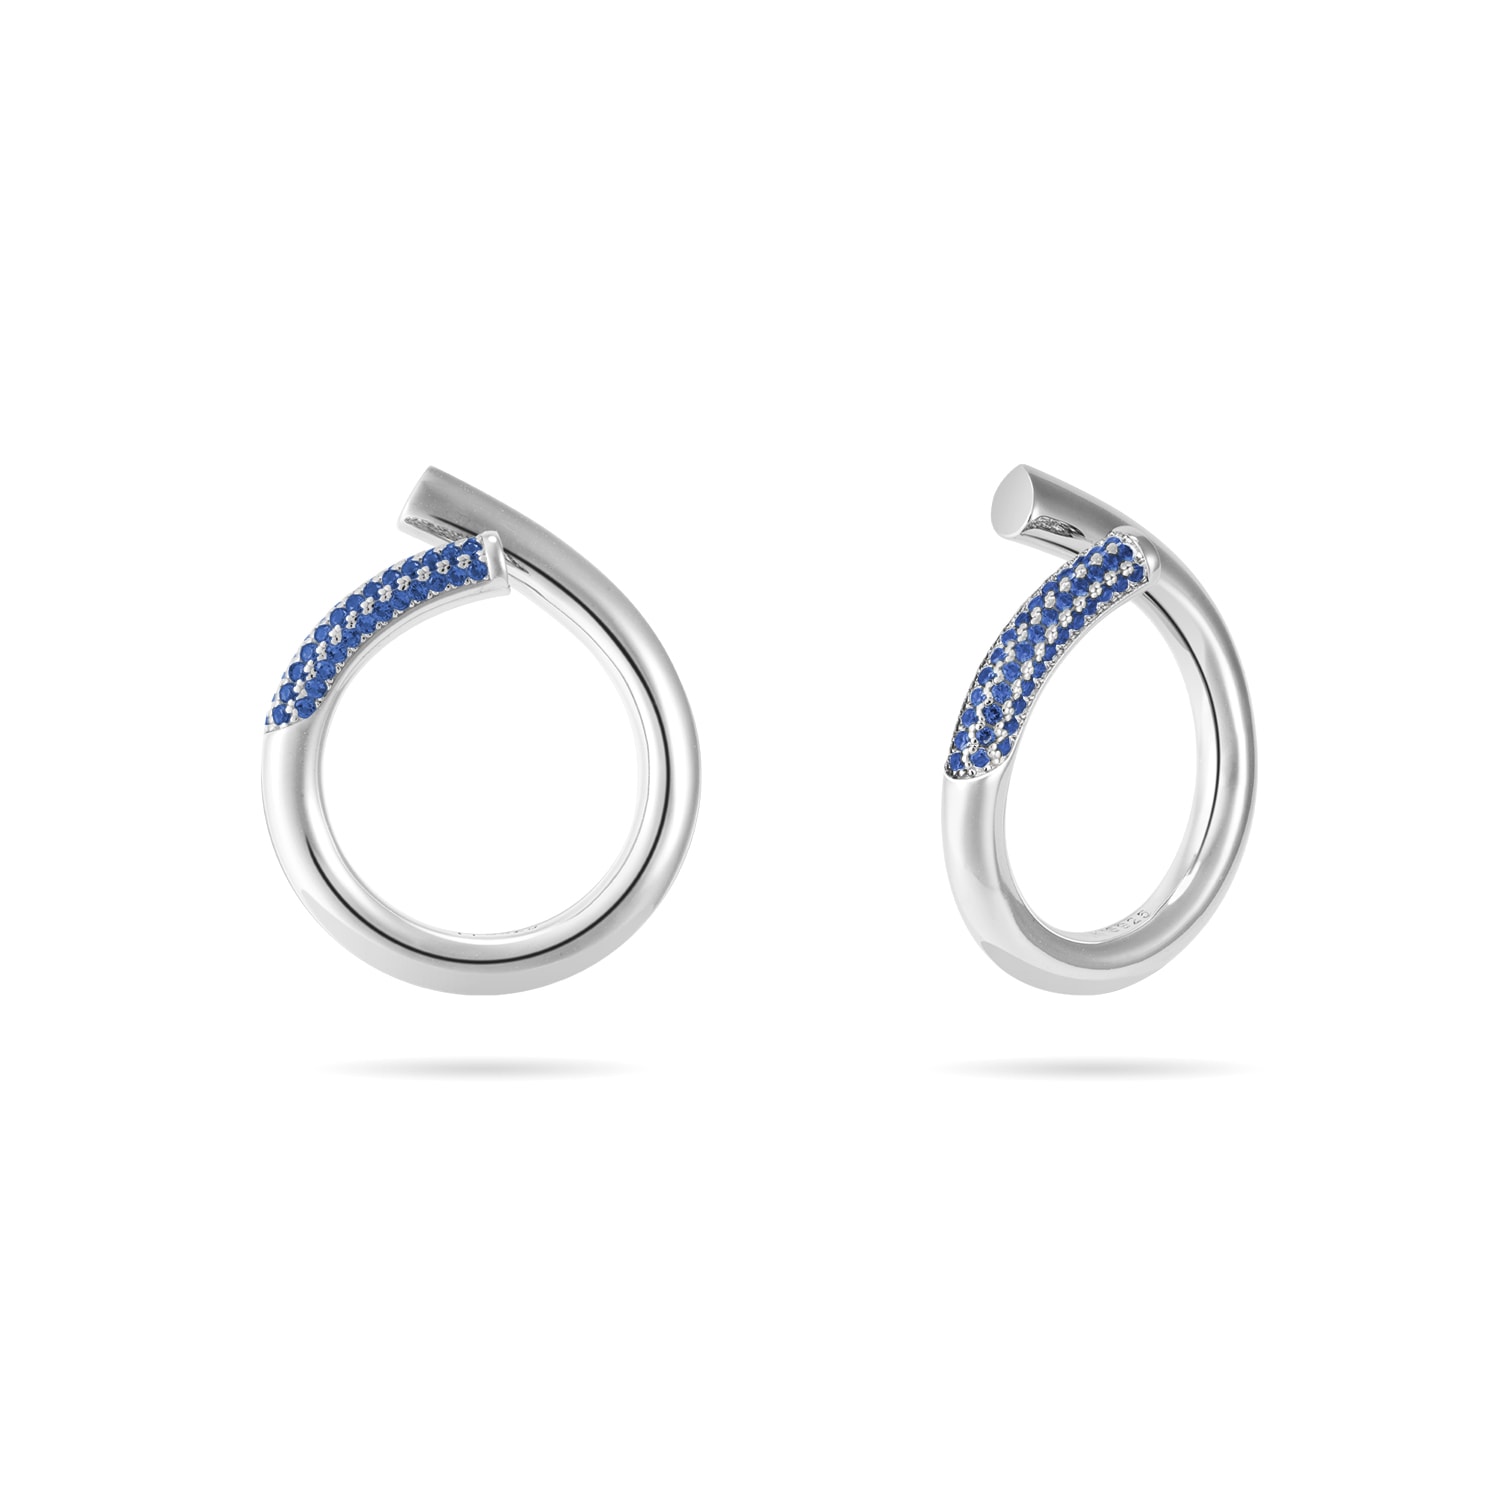 Meulien Women's Silver / Blue Open Twist Waterdrop Ring - Silver, Blue Stone In Silver/blue